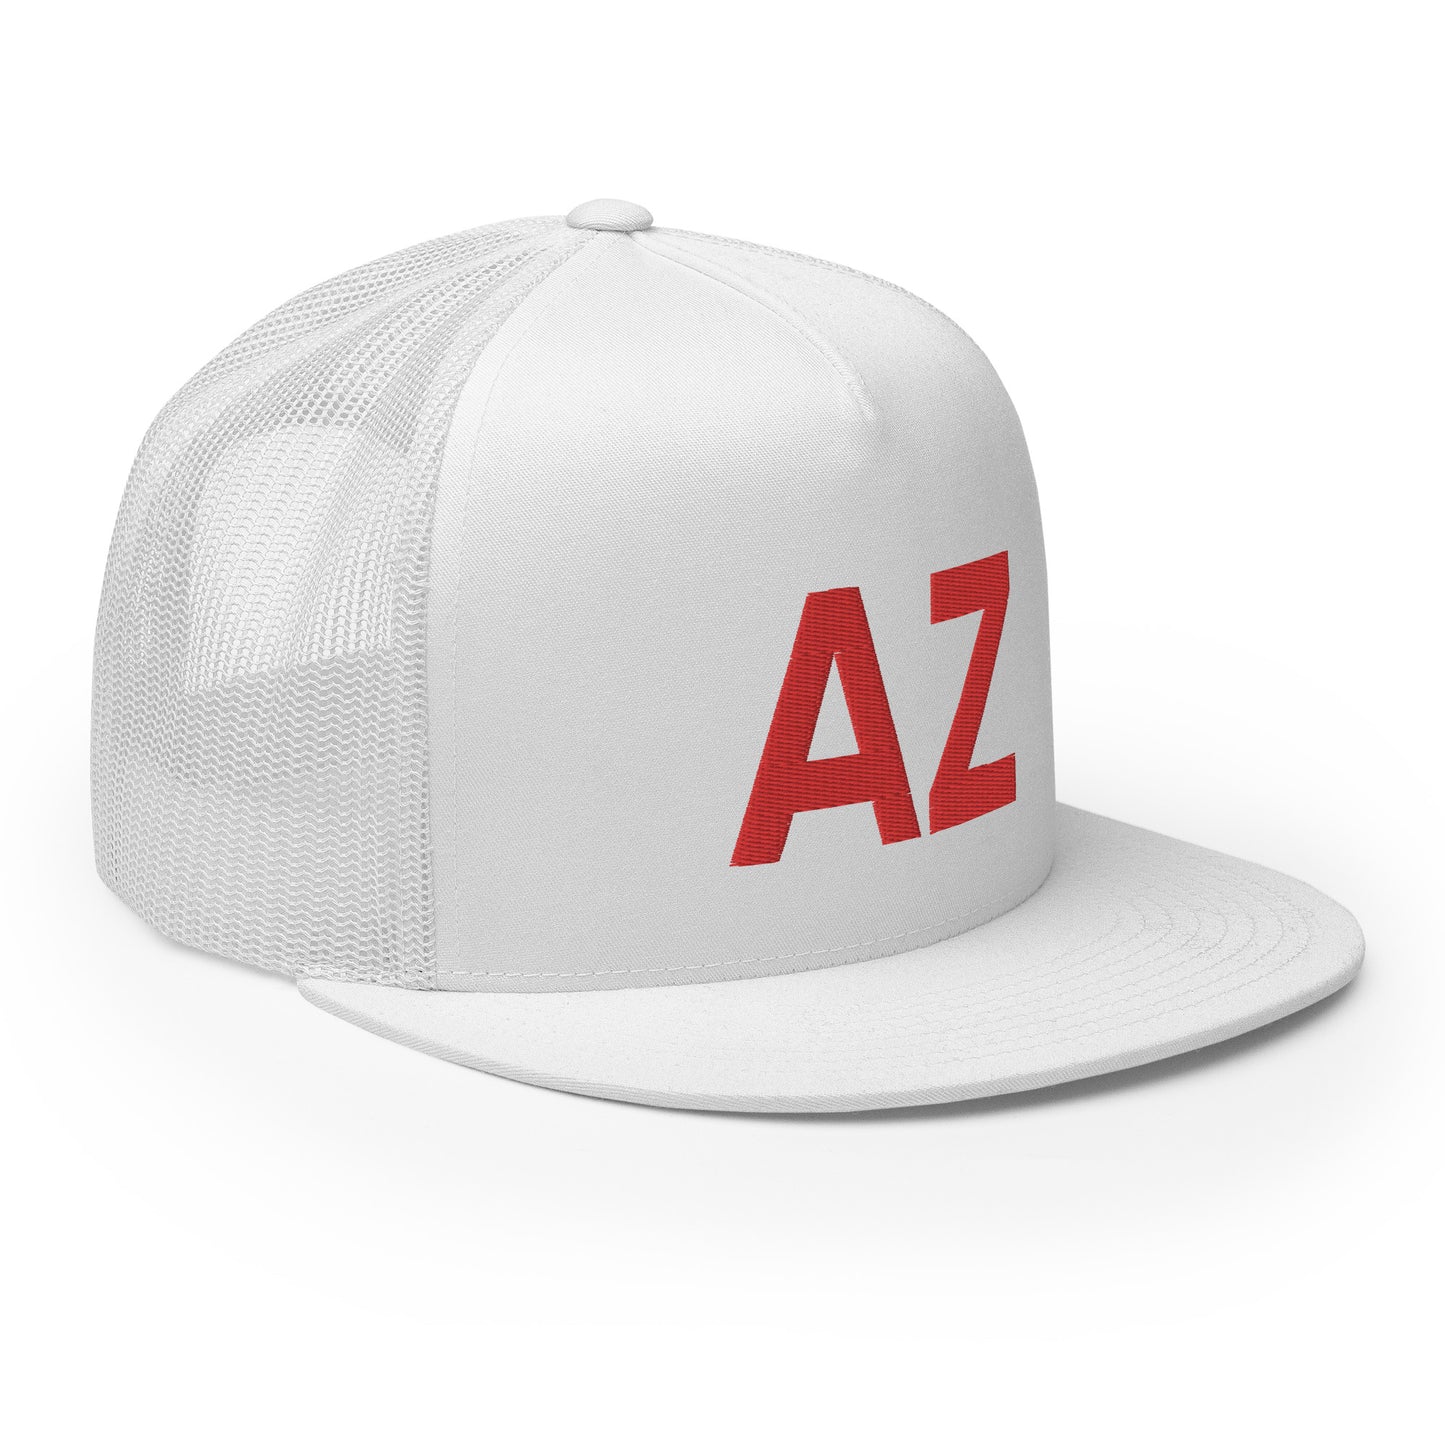 AZ Arizona Strong Trucker Hat